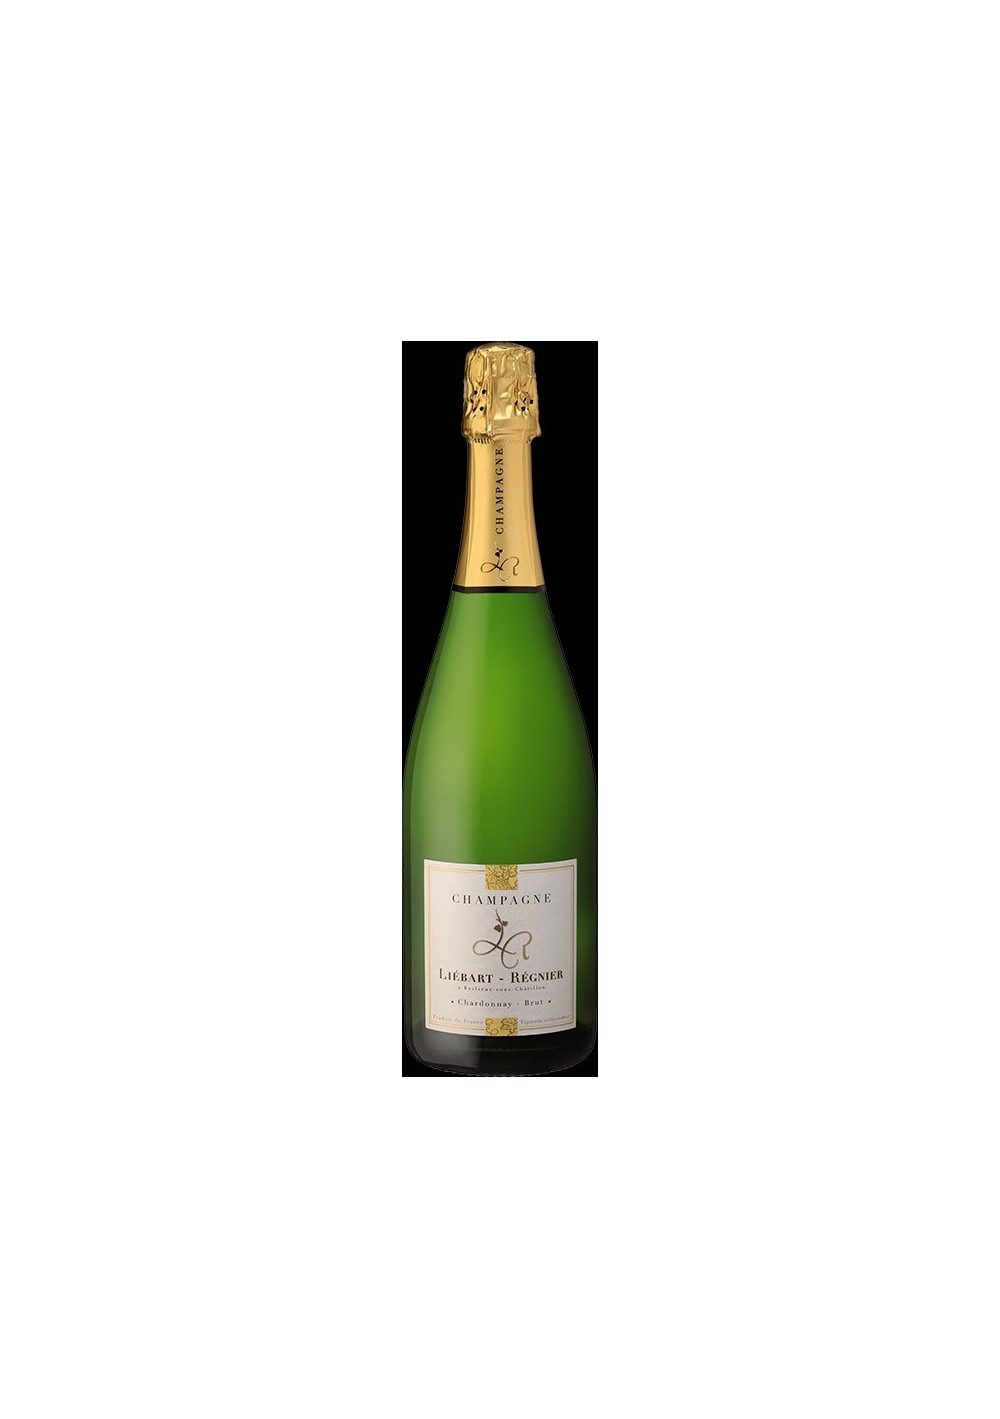 Champagne Liébart-Régnier Brut Chardonnay (75cl)